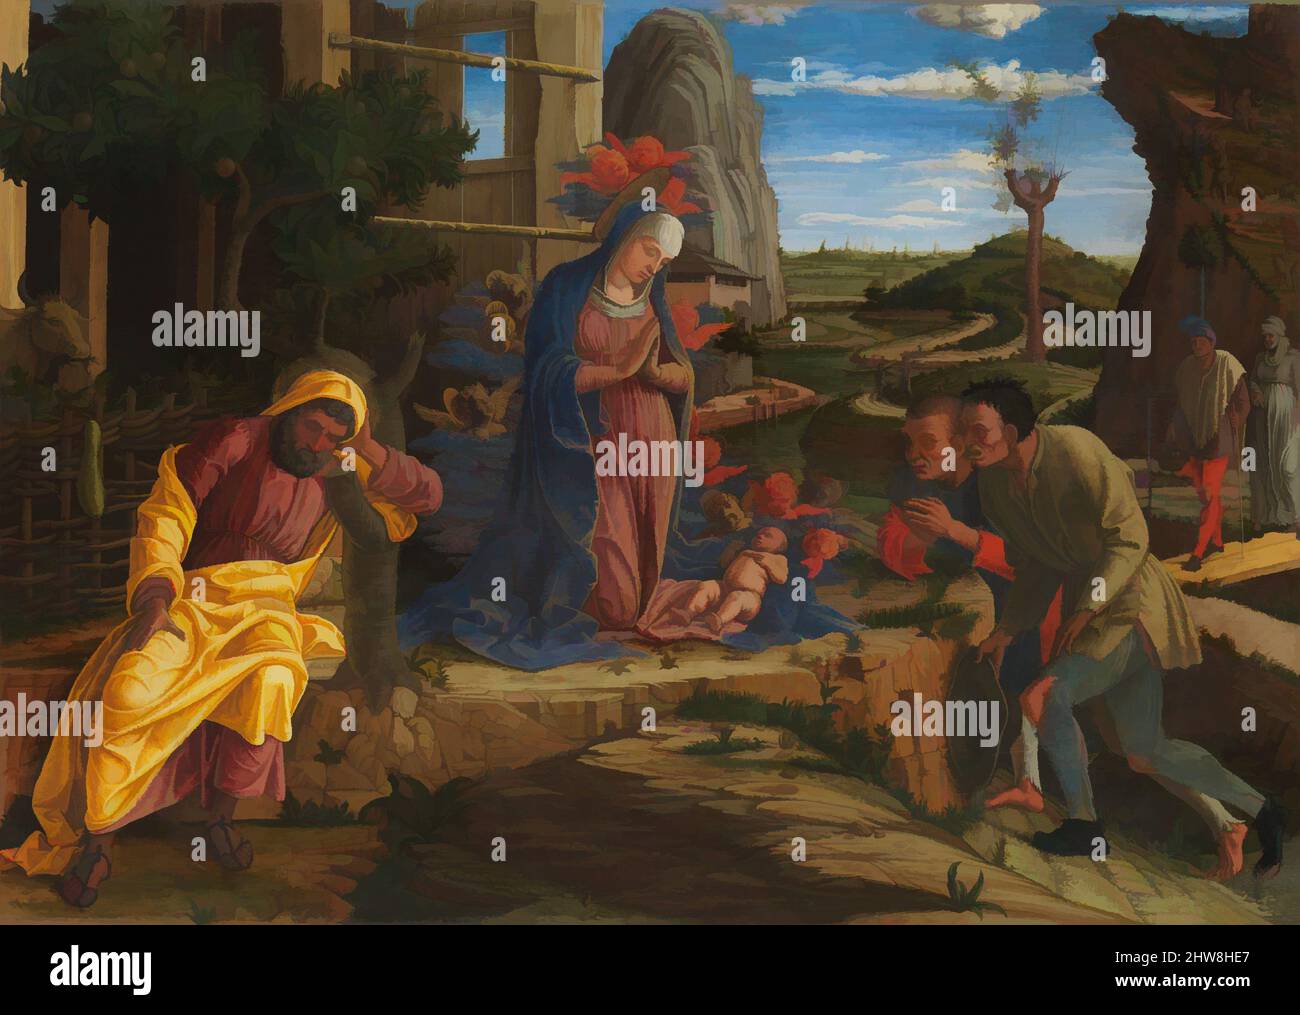 Art inspiré par l'adoration des bergers, peu après 1450, Tempera sur toile, transféré du bois, total 15 3/4 x 21 7/8 po. (40 x 55,6 cm); surface peinte 14 7/8 x 21 po (37,8 x 53,3 cm), peintures, Andrea Mantegna (Italien, Isola di Carturo 1430/31–1506 Mantua, oeuvres classiques modernisées par Artotop avec une touche de modernité. Formes, couleur et valeur, impact visuel accrocheur sur l'art émotions par la liberté d'œuvres d'art d'une manière contemporaine. Un message intemporel qui cherche une nouvelle direction créative. Artistes qui se tournent vers le support numérique et créent le NFT Artotop Banque D'Images